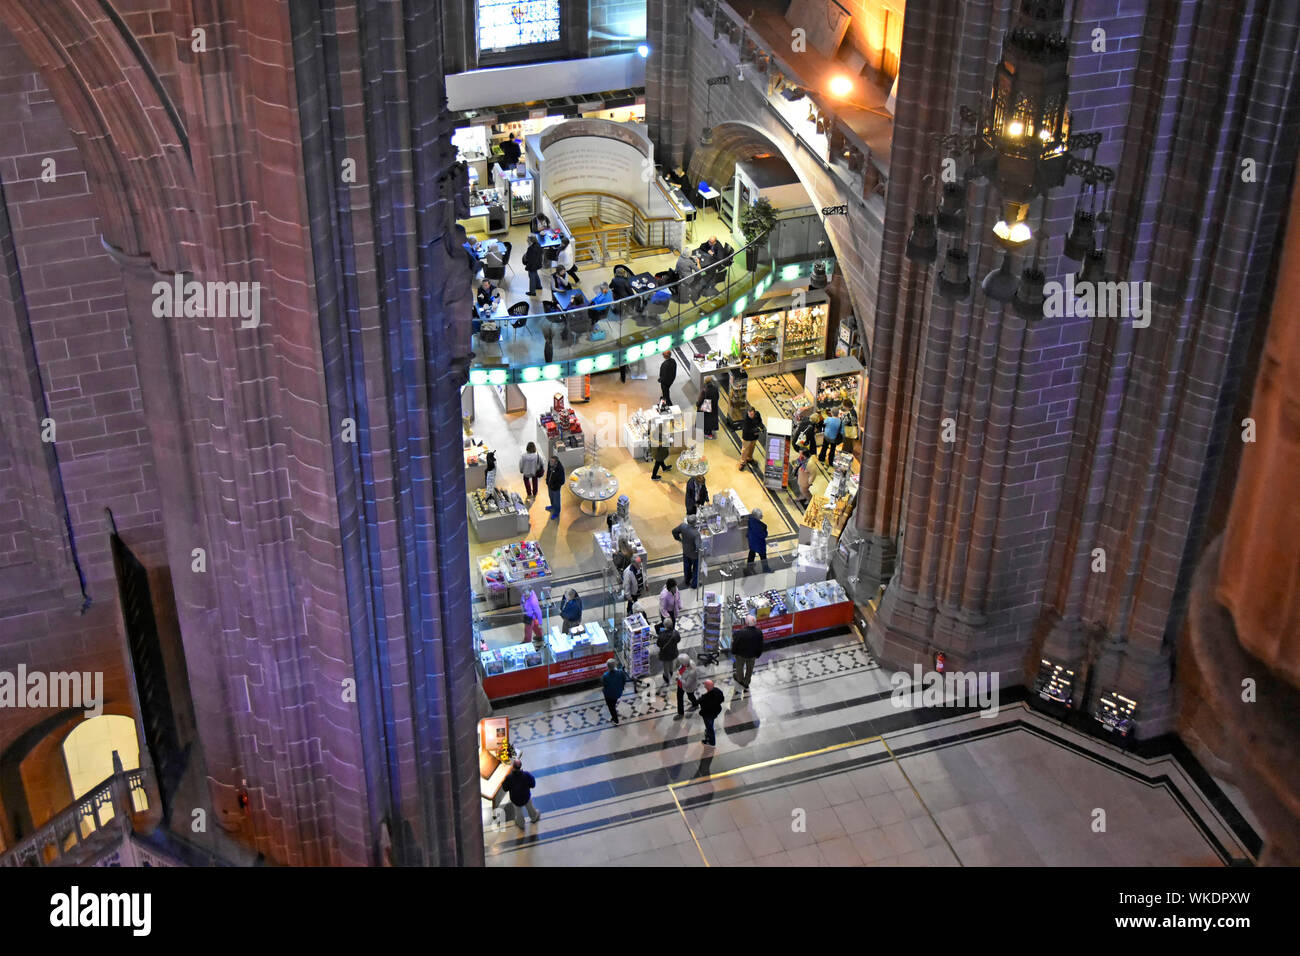 Vue aérienne vers le bas depuis le haut sur les gens qui font leurs courses dans la boutique de cadeaux et la nef du café de la cathédrale anglicane de Liverpool éclairage mural de couleur Angleterre Royaume-Uni Banque D'Images